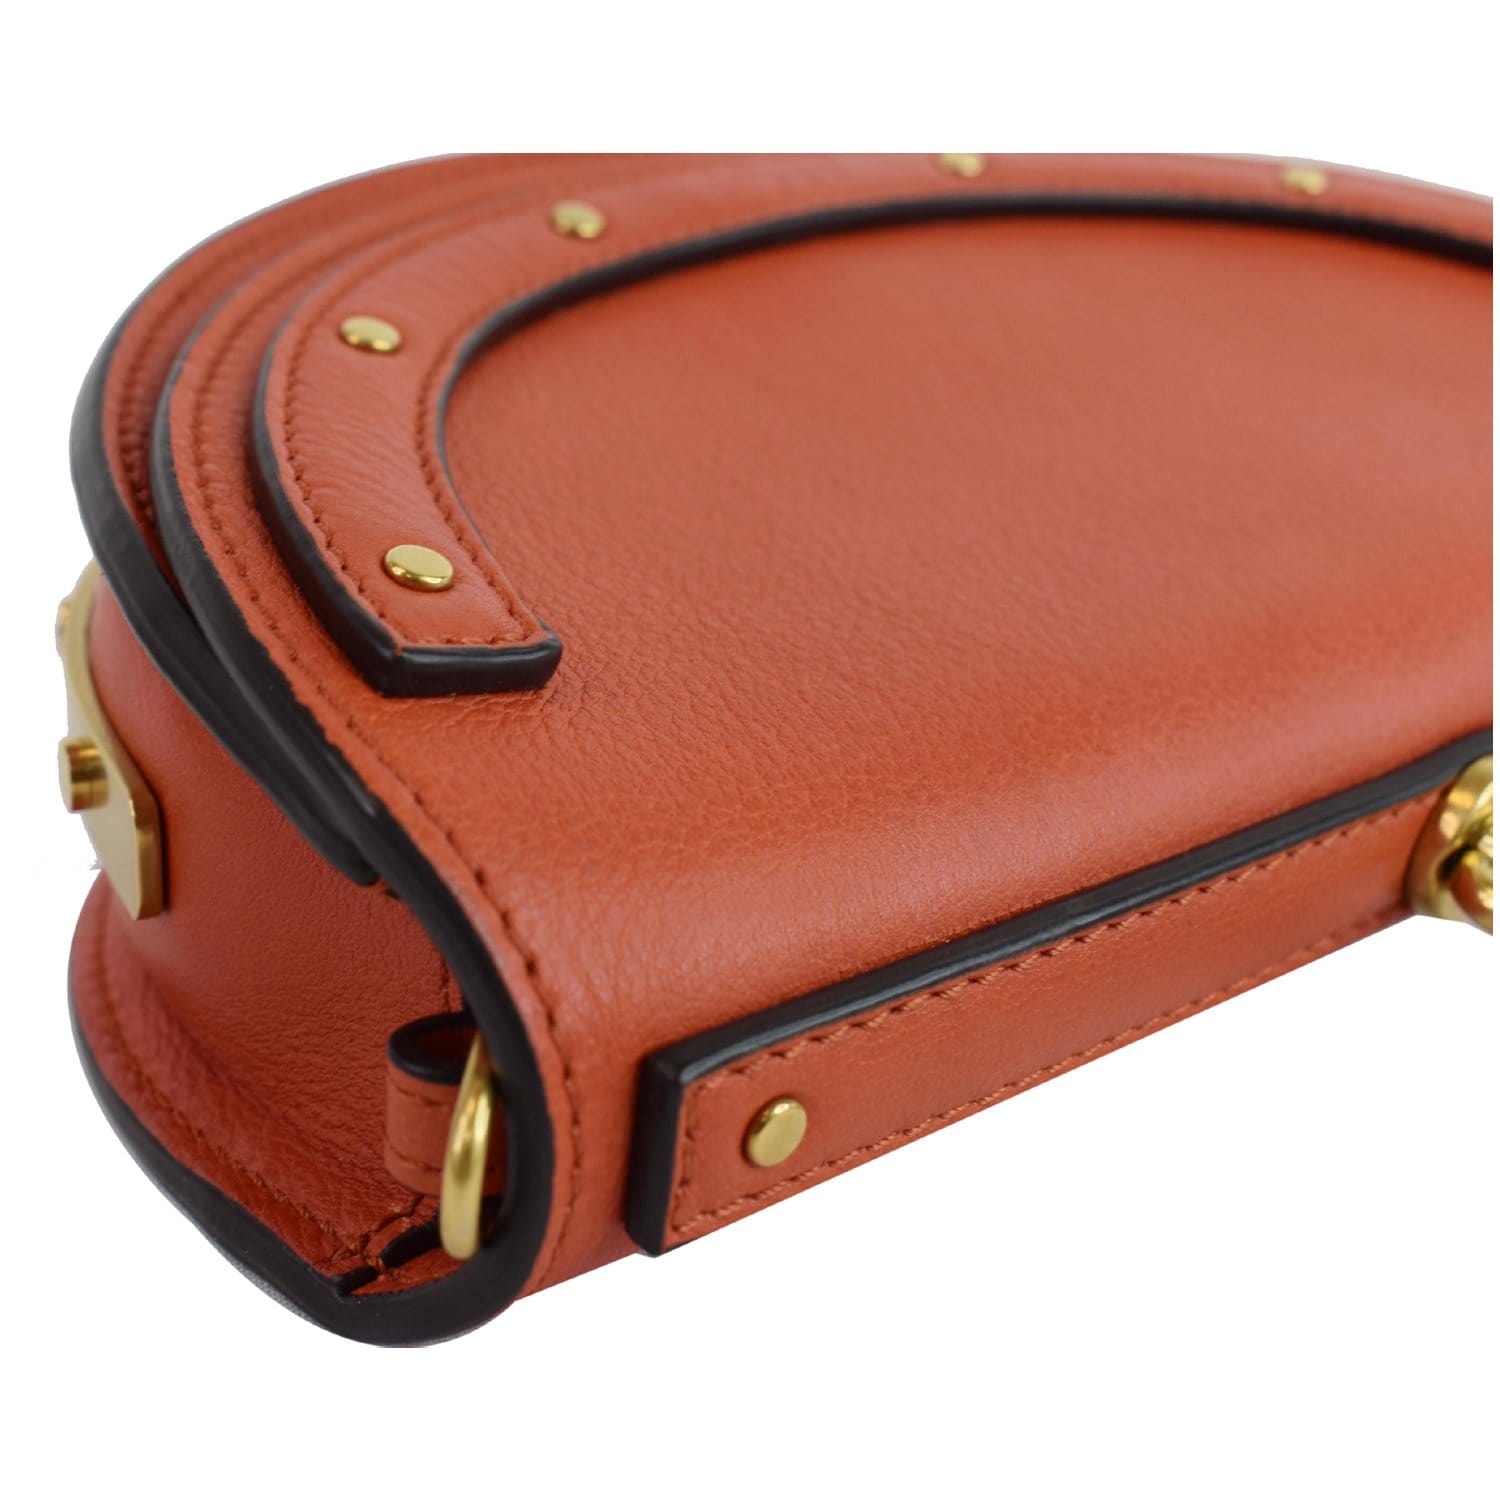 Chloe Medium Nile Gold Bangle Bracelet Handle Taupe Leather Saddle Bag